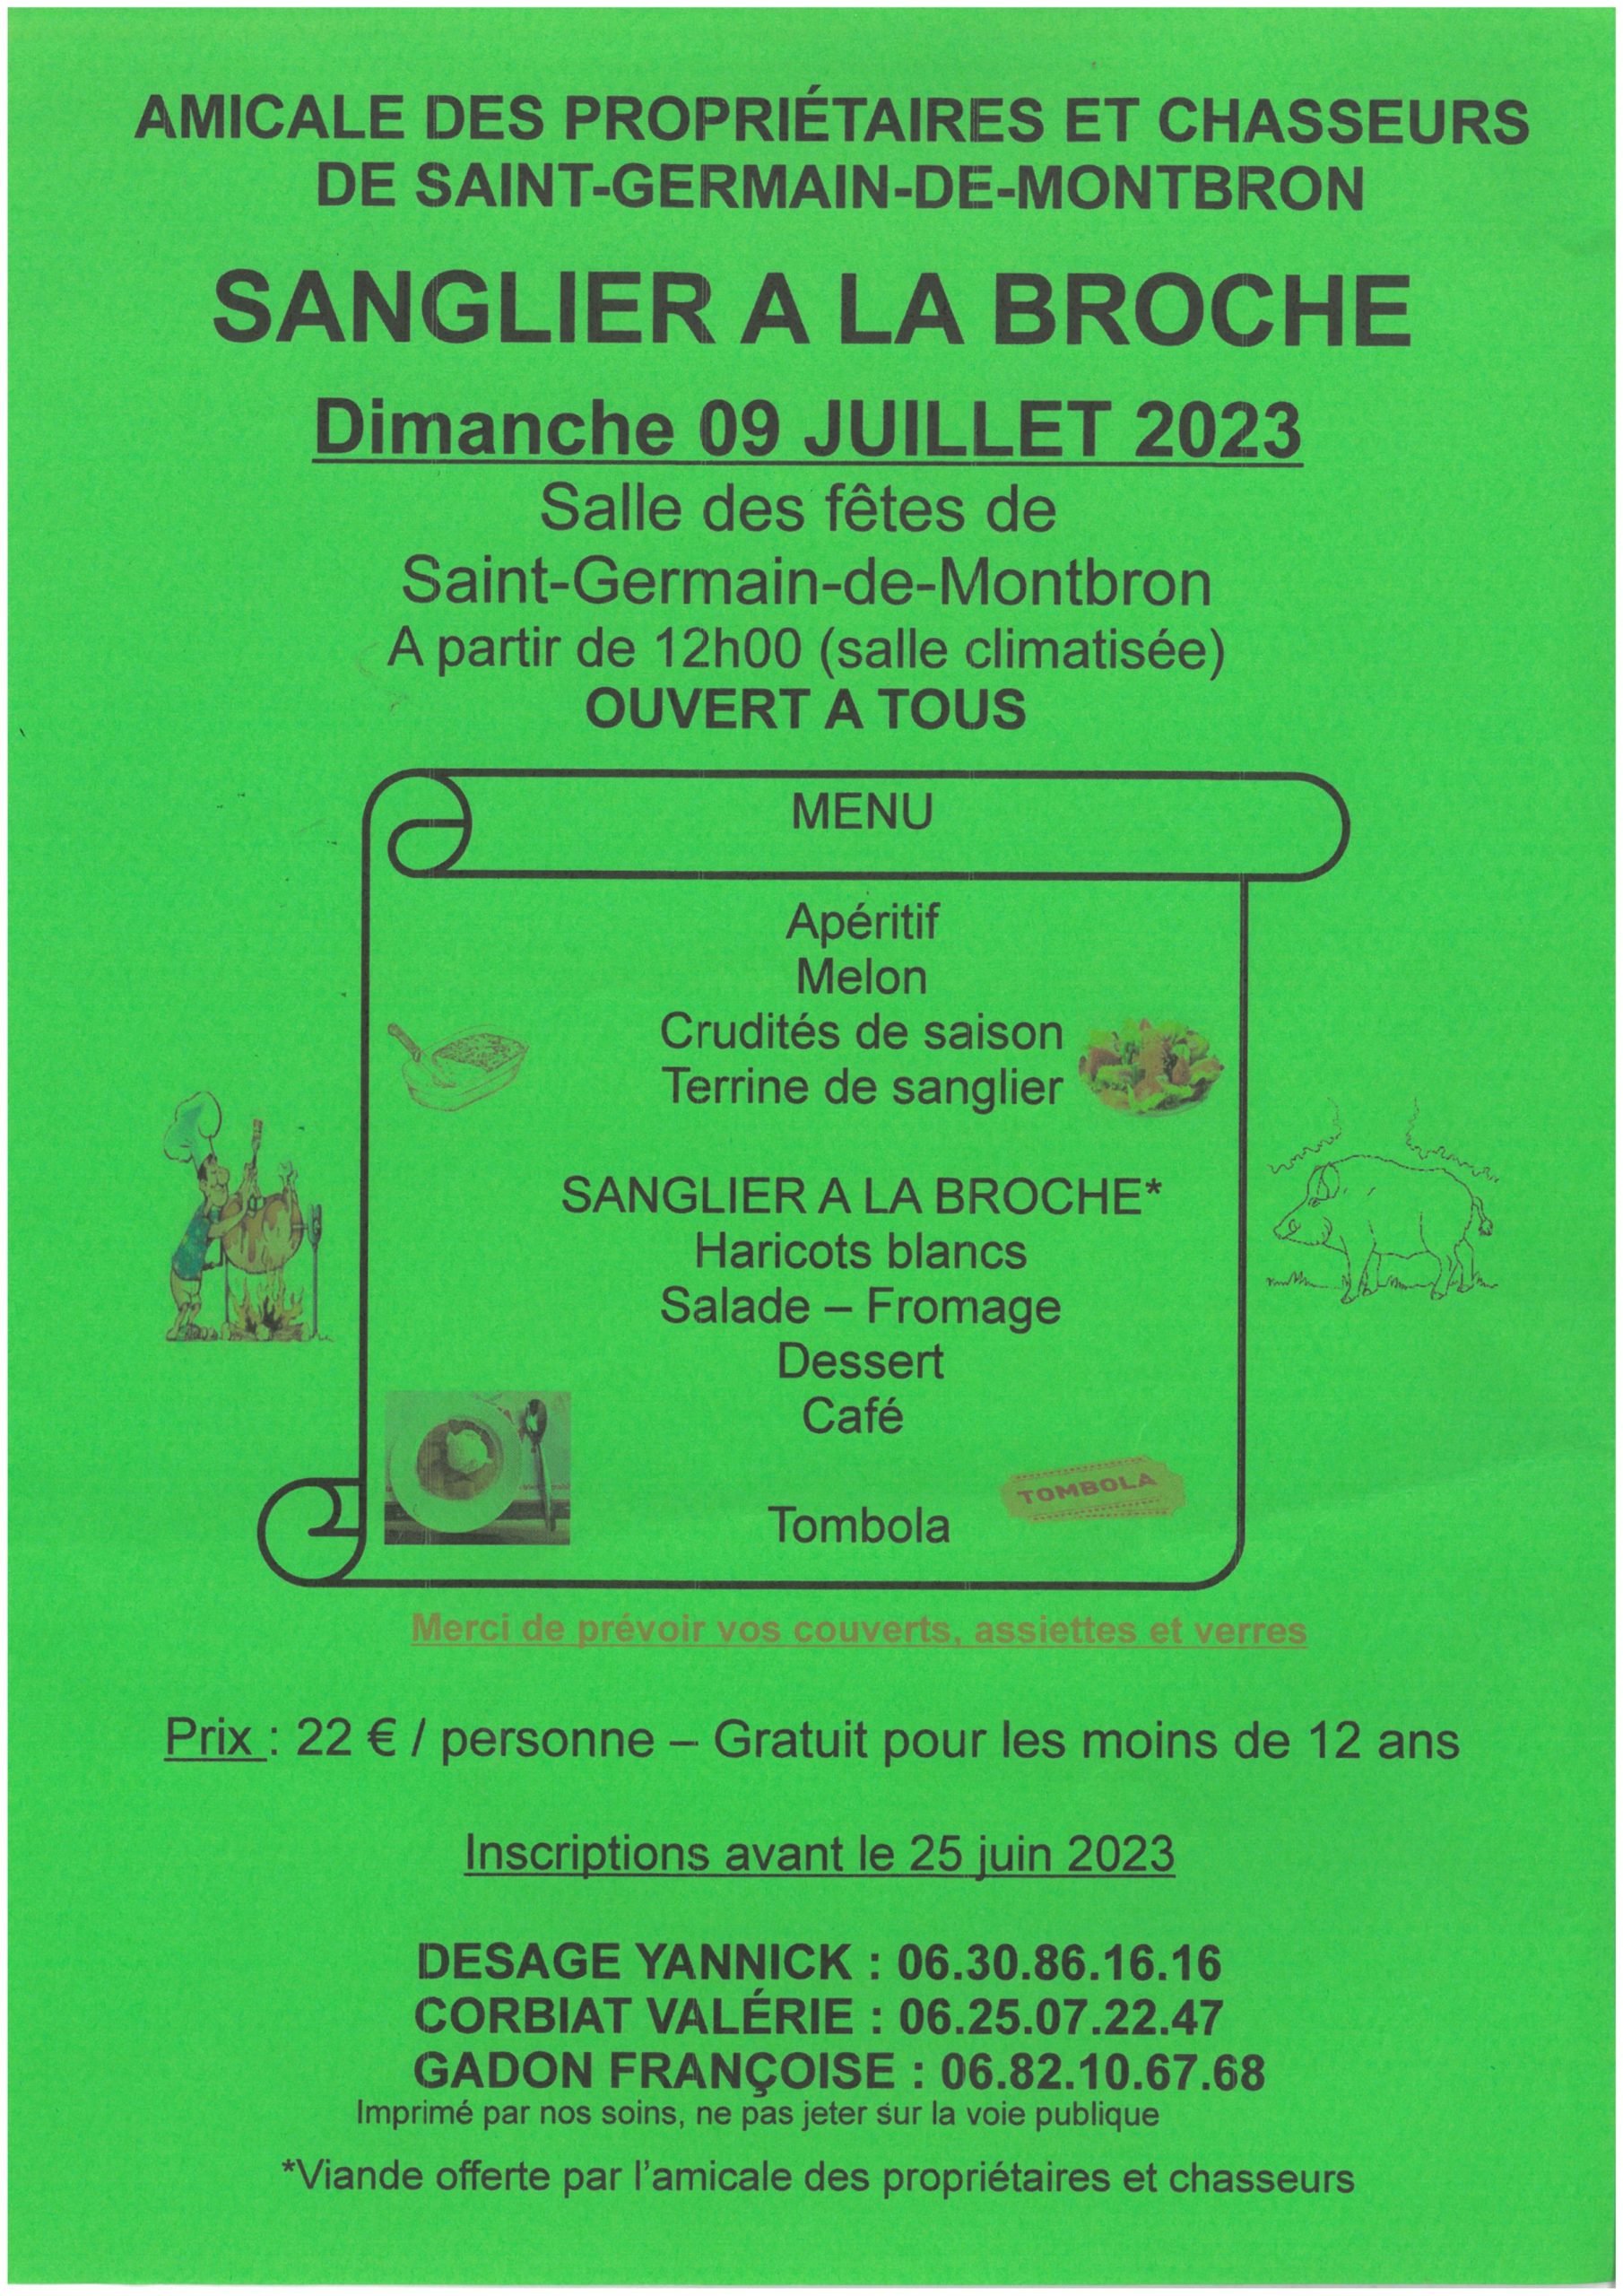 Sanglier à la broche le 09 juillet 2023 à Saint Germain de Montbron